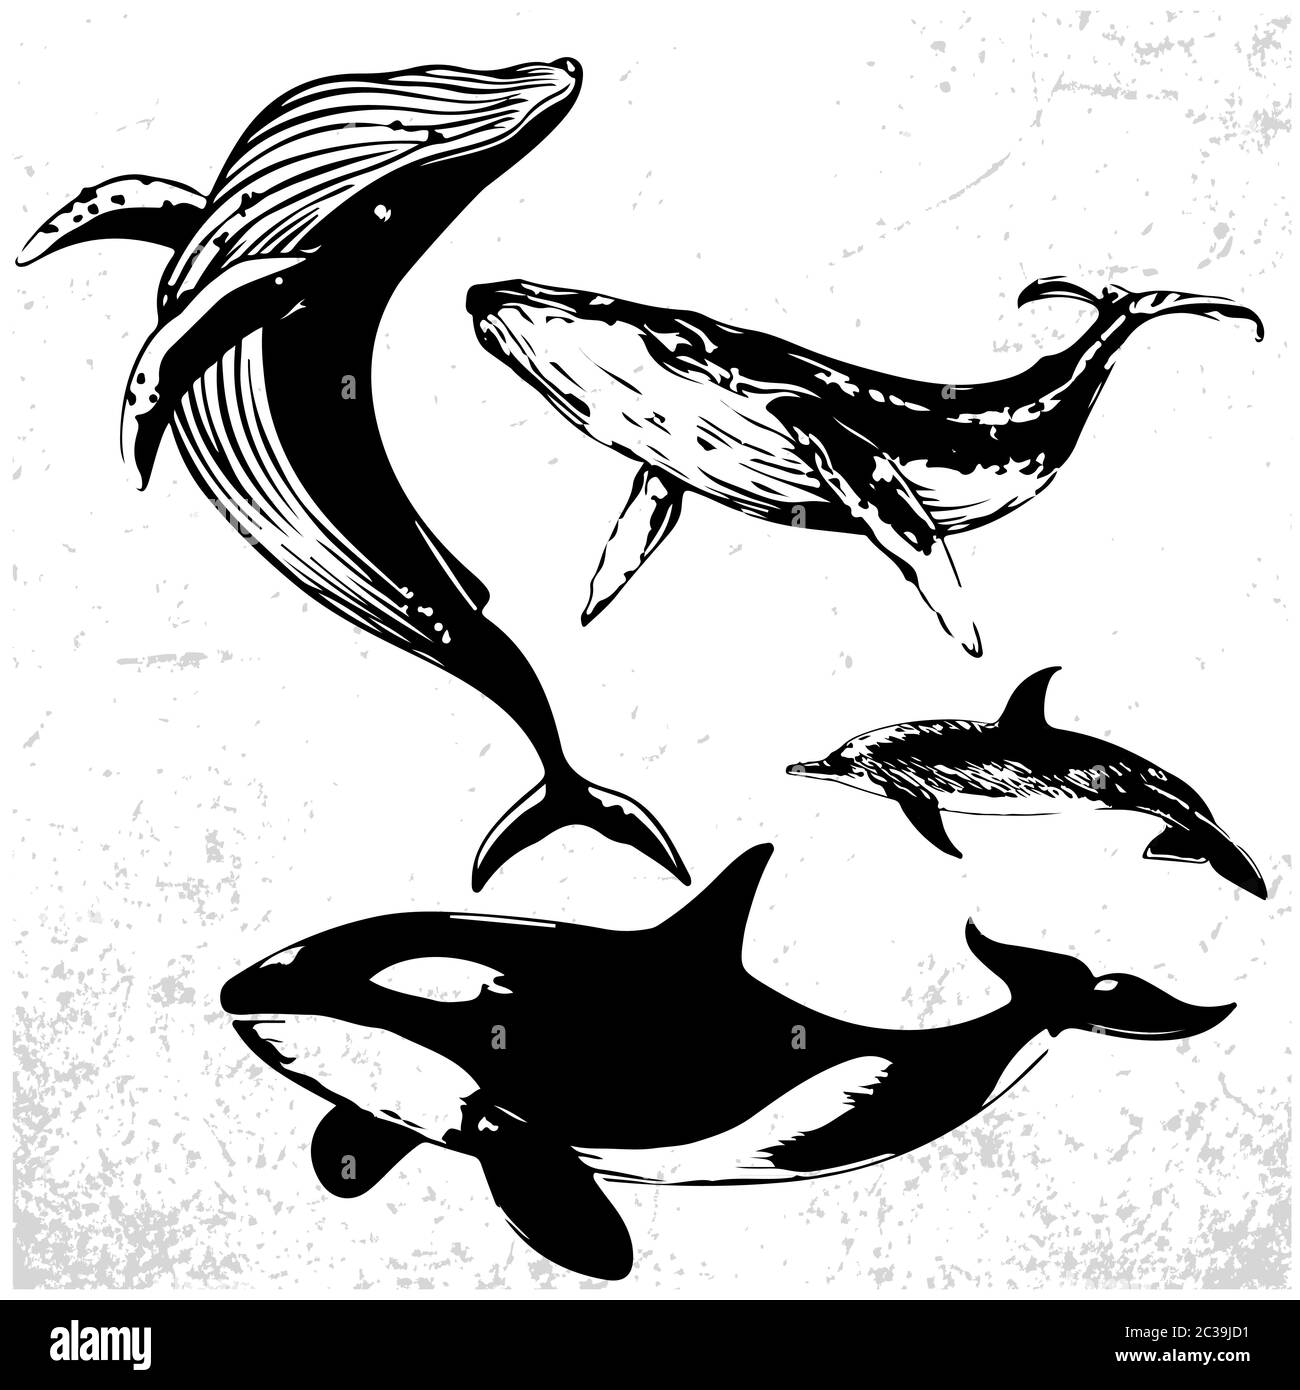 Ensemble de baleines dans un style simple et réaliste. Illustration vectorielle de dessins noirs et blancs de mammifères marins. Big Blue Whale, Salot Whale ou Cachalot et Illustration de Vecteur